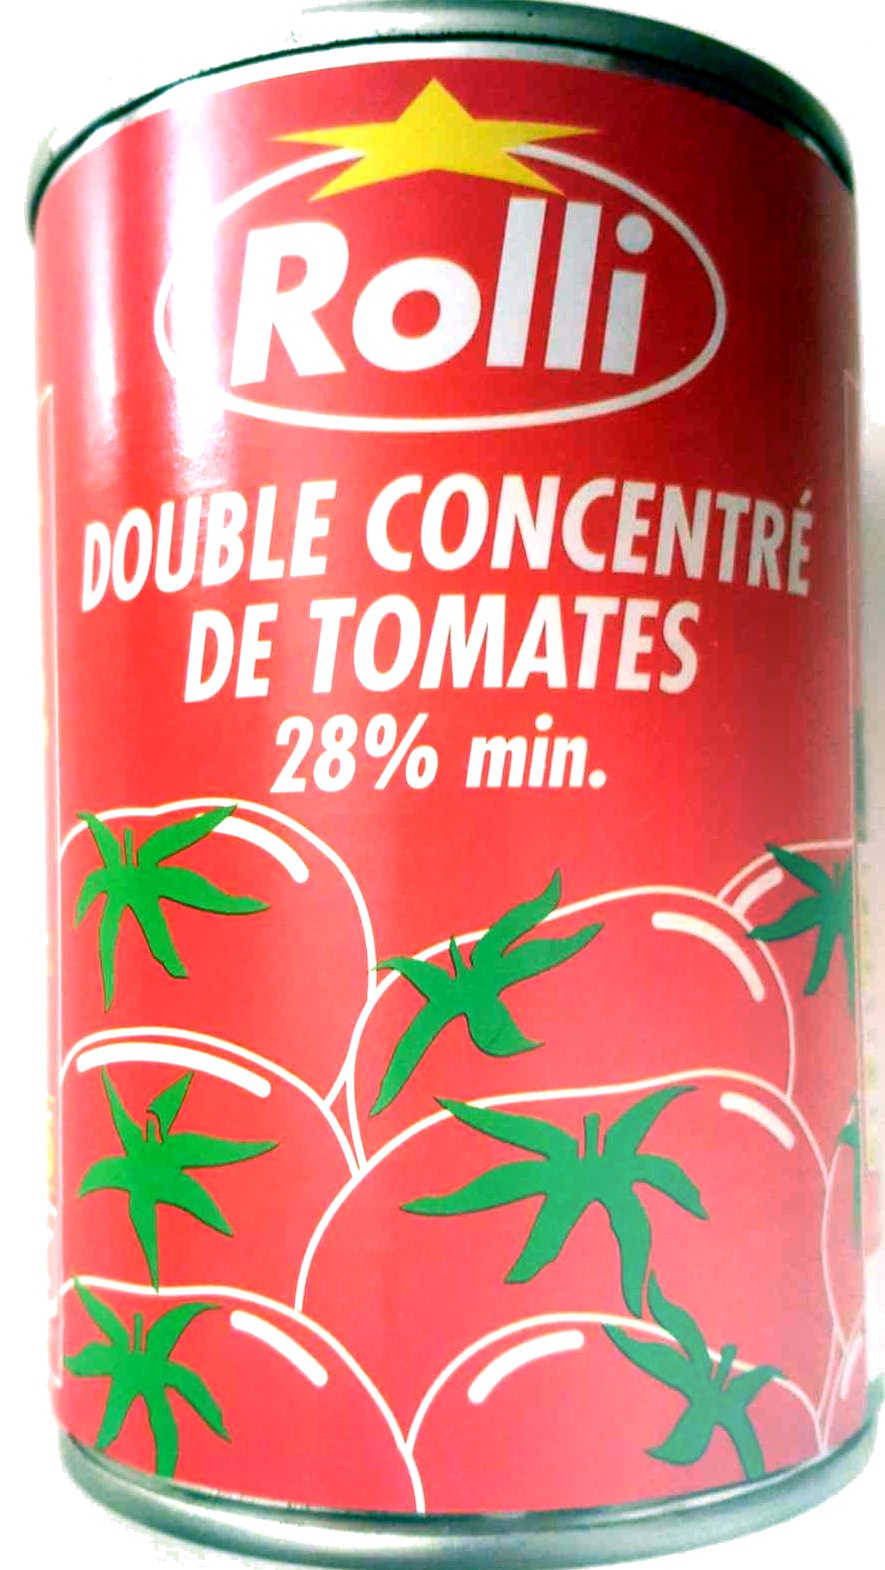 Double concentré de tomates - 28% min - Product - fr